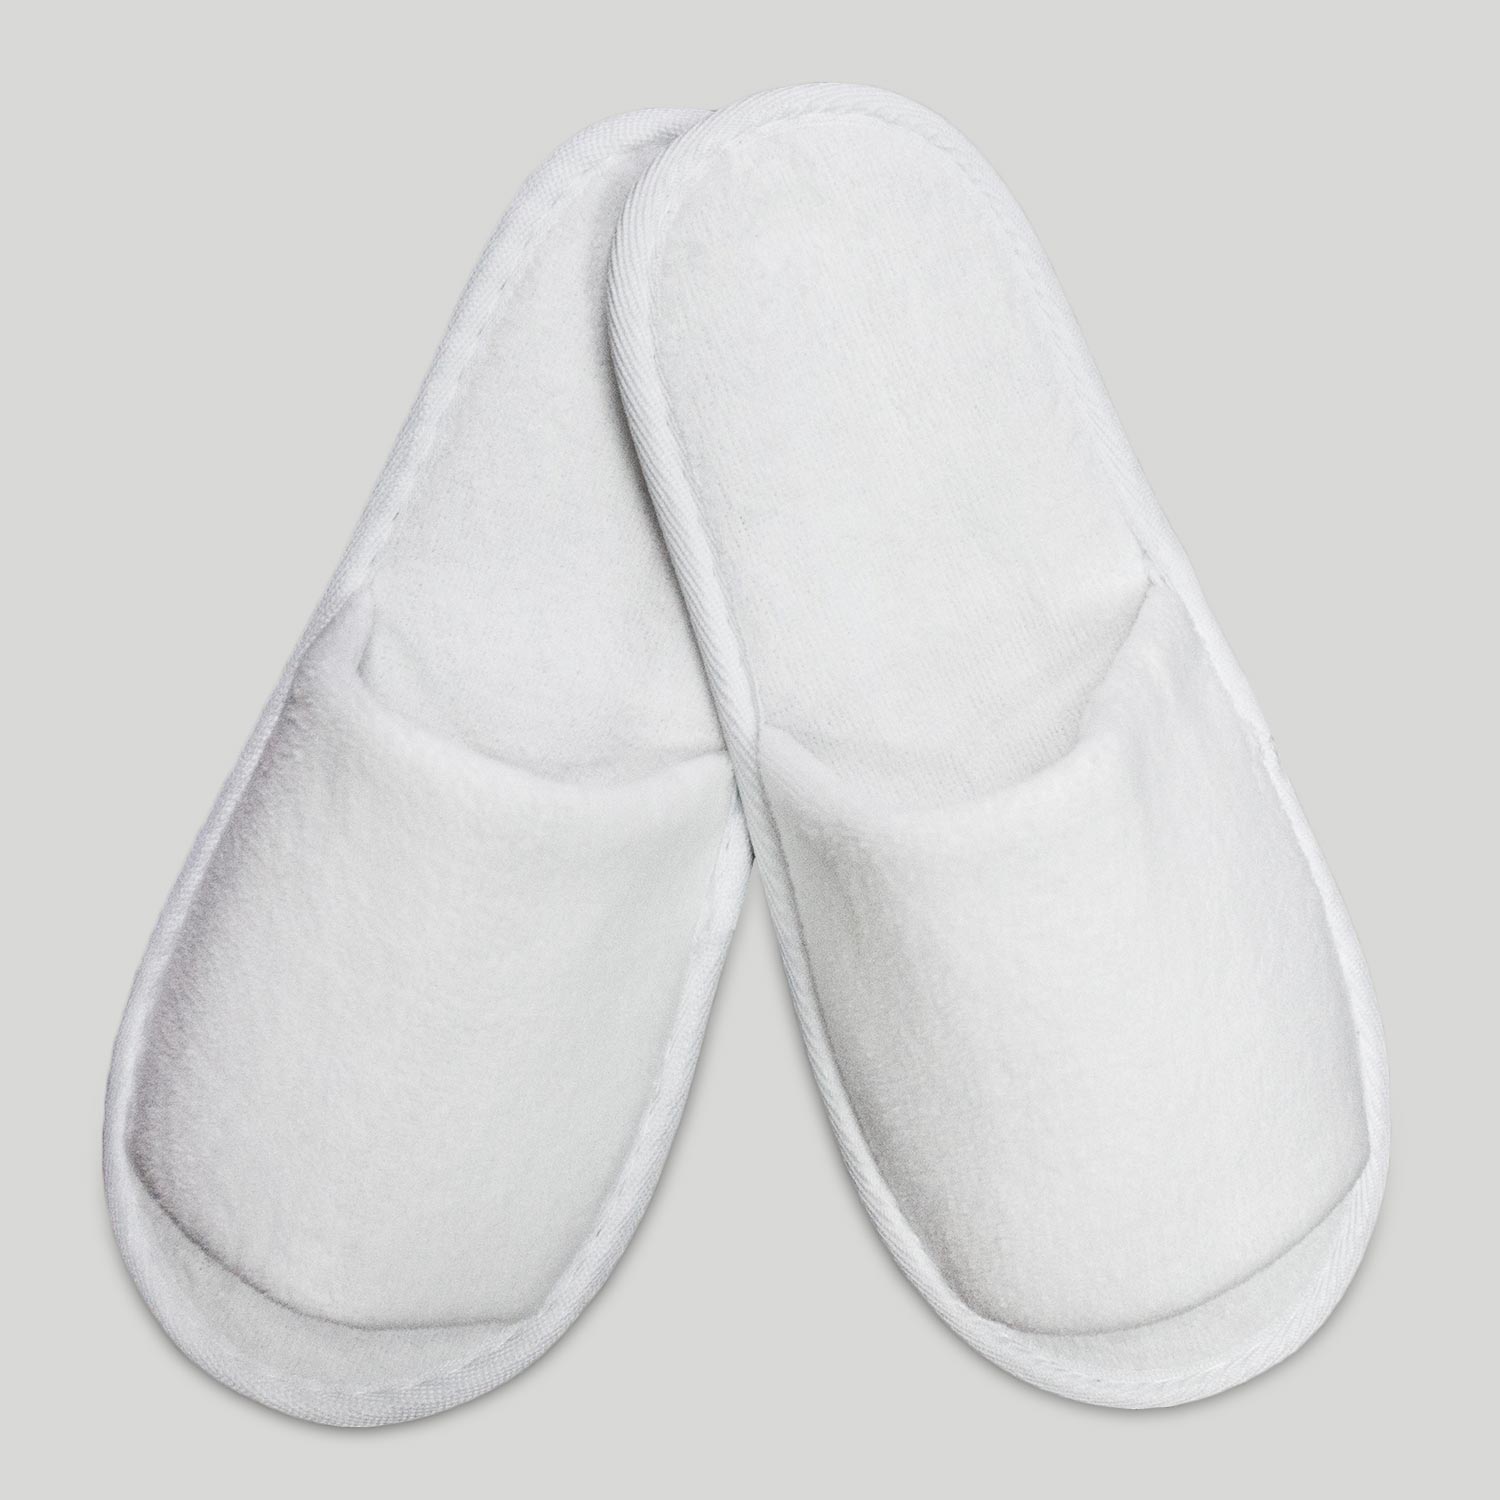 white slippers for boys